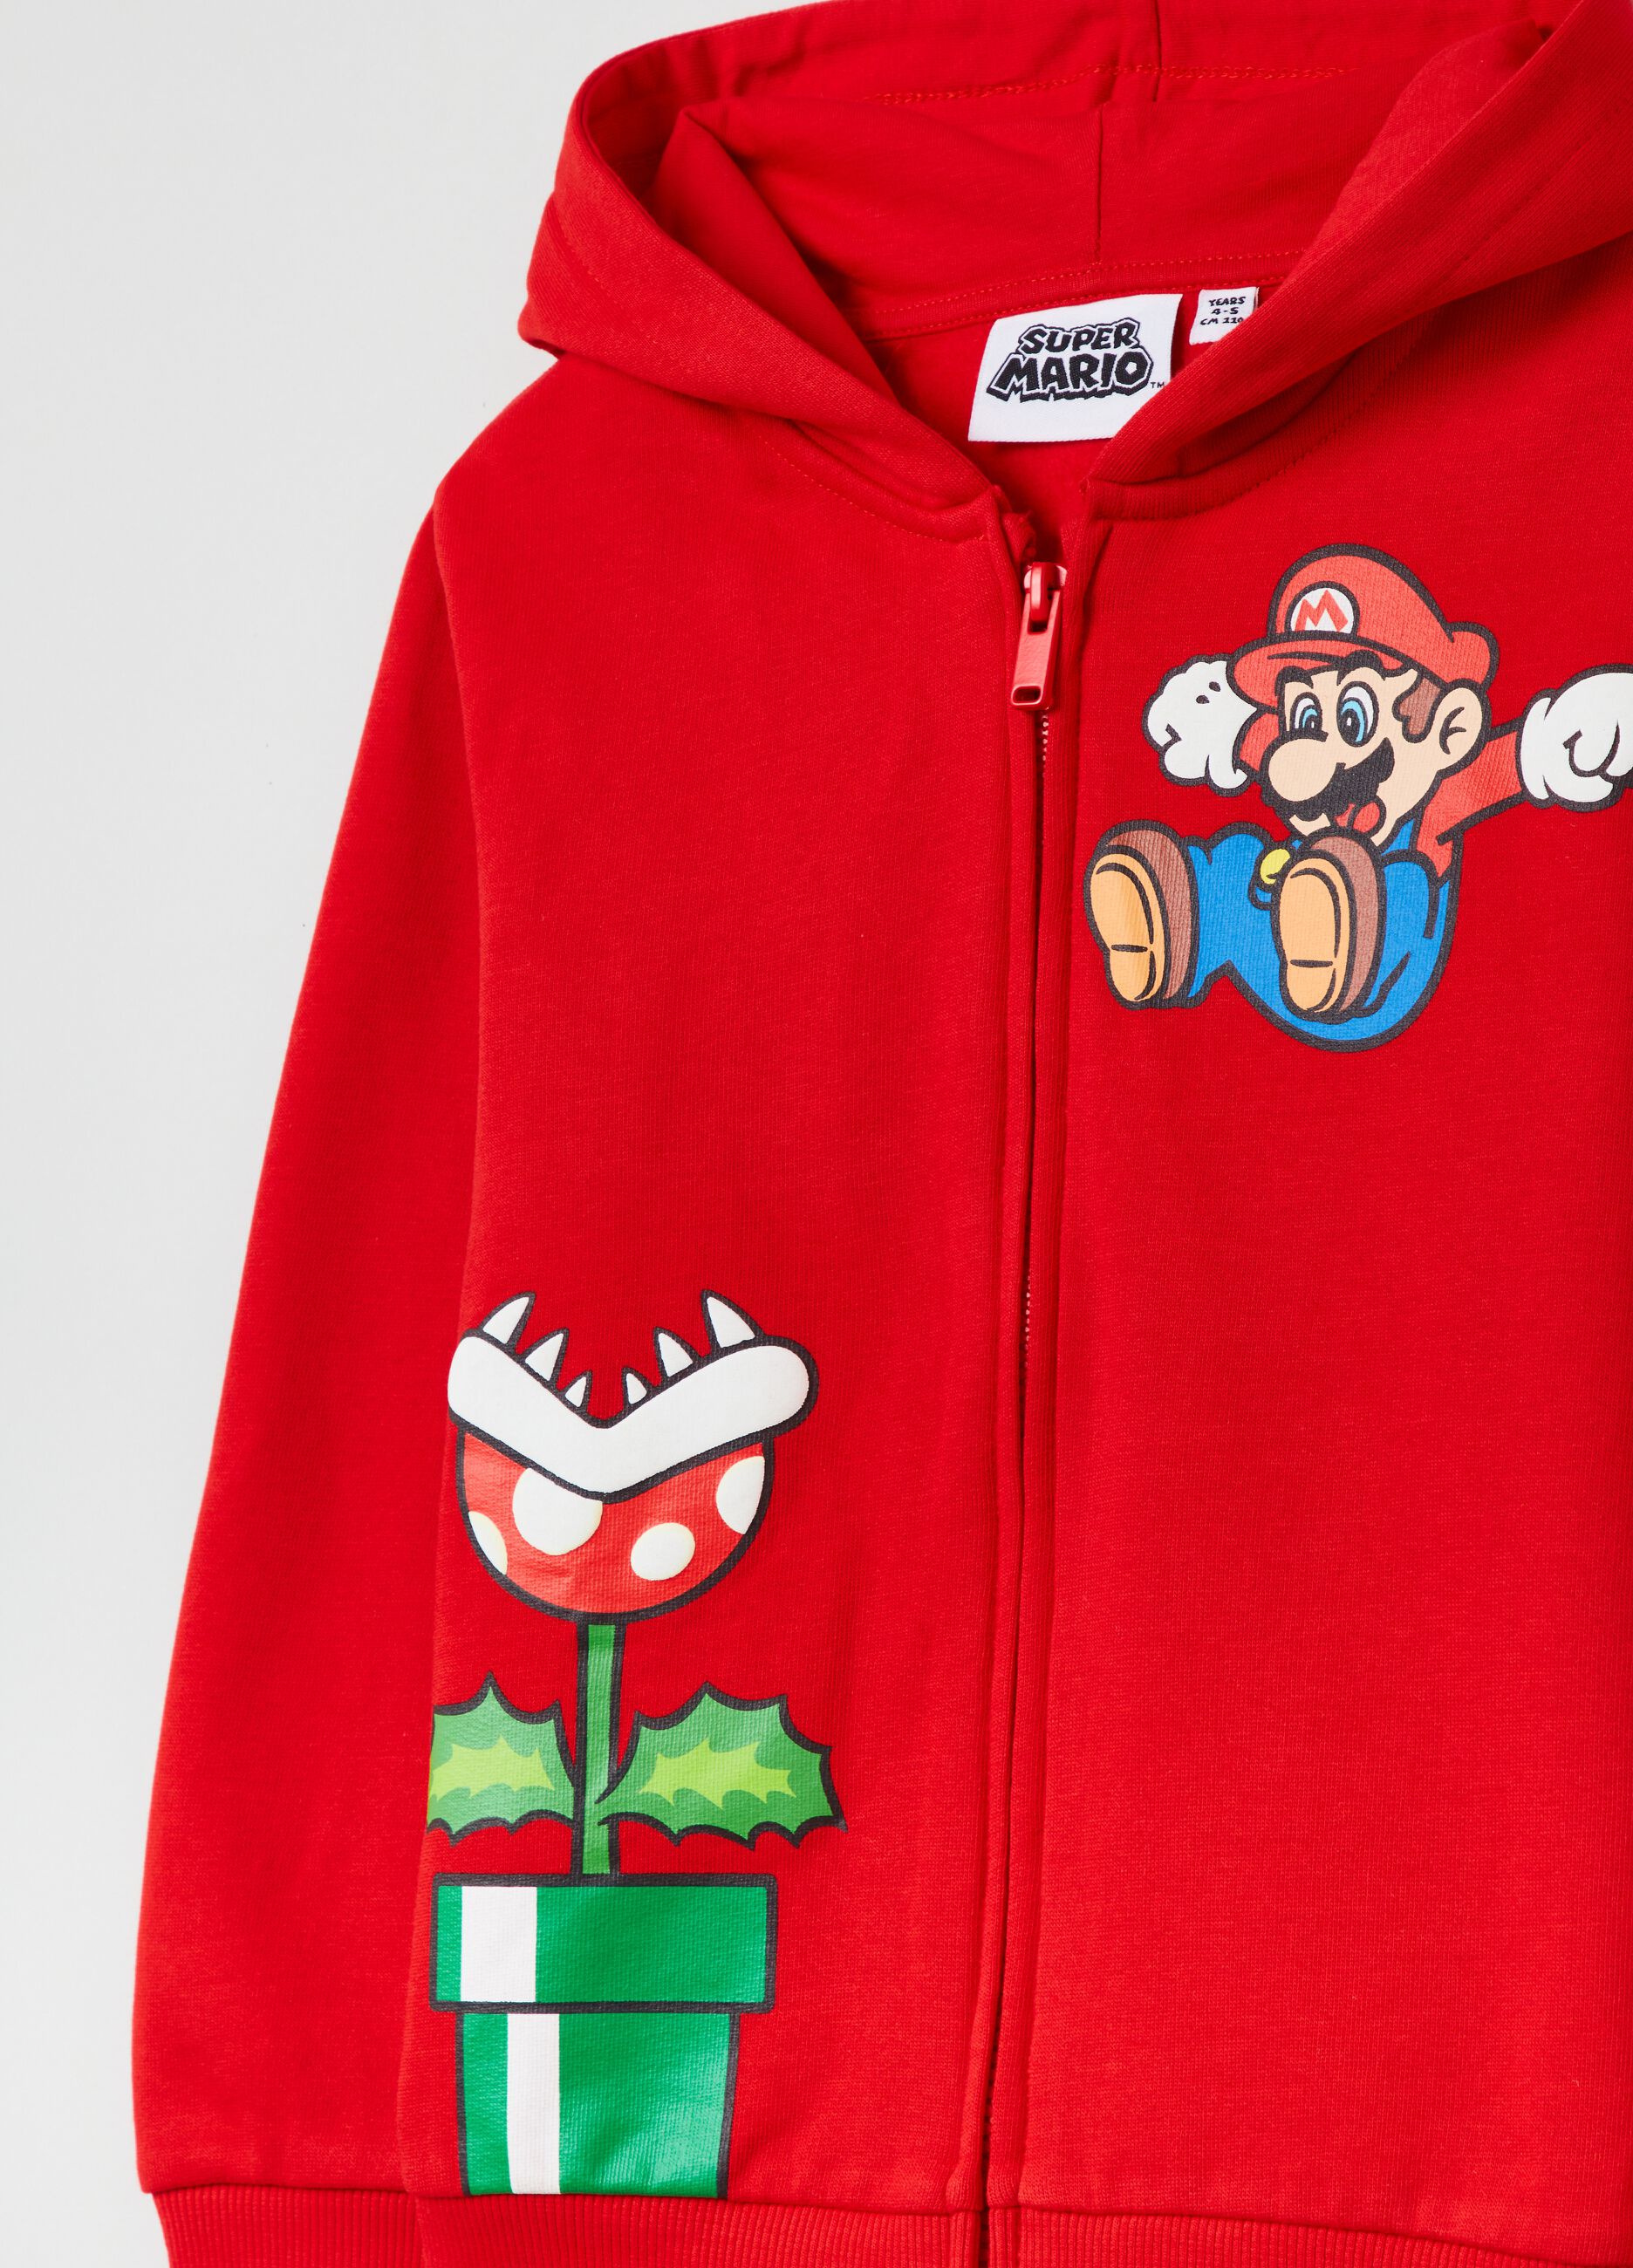 Sudadera con cremallera, capucha y estampado Super Mario